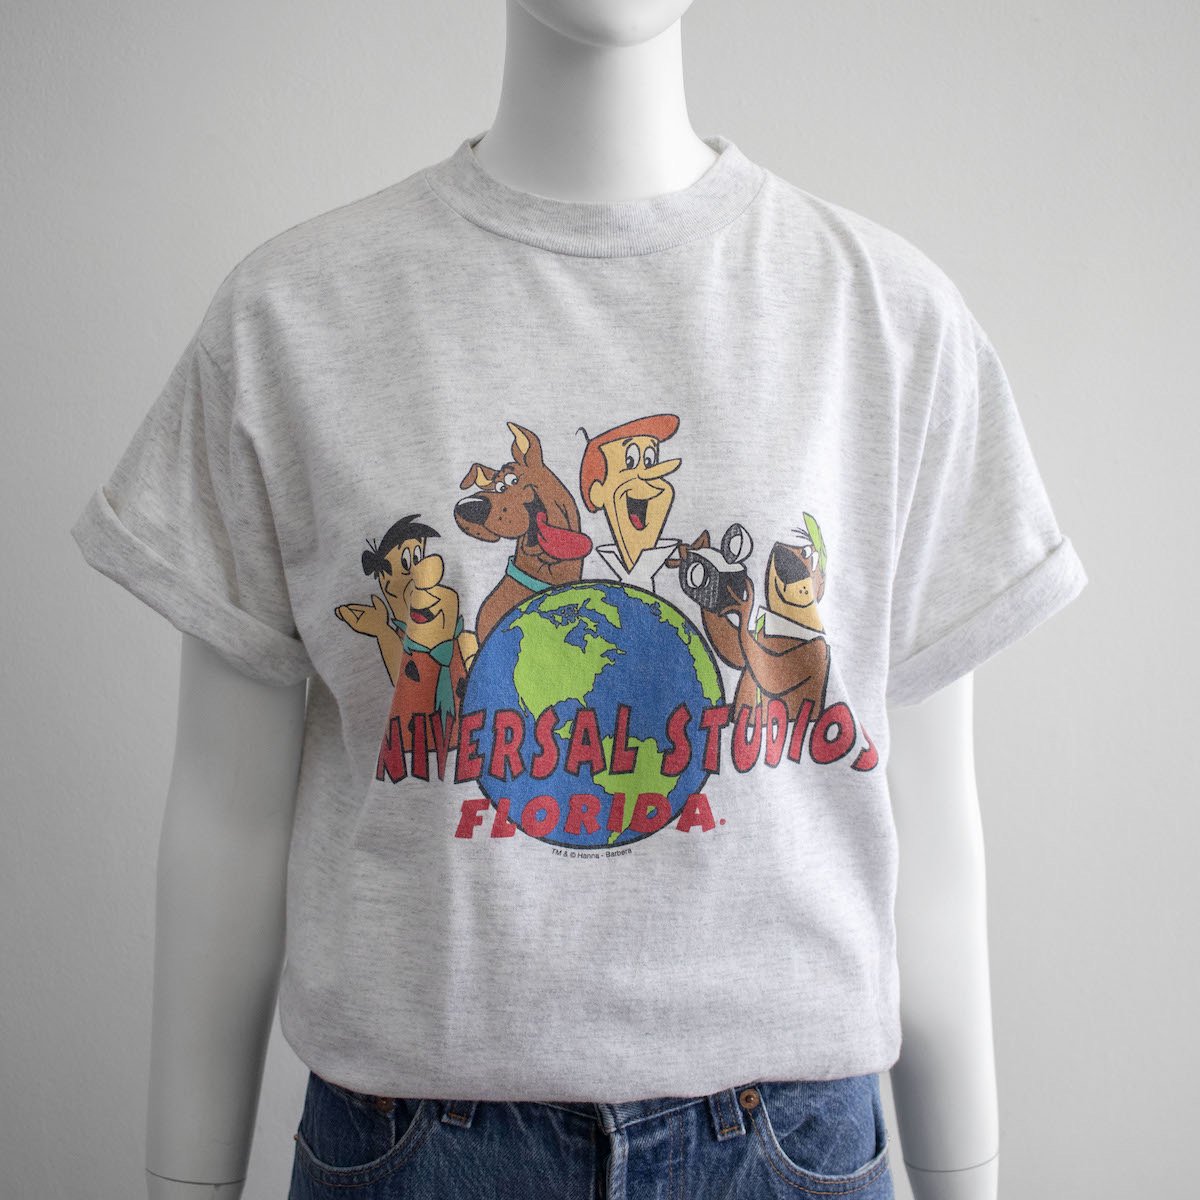 レディース] 1990s USA製 ユニバーサルスタジオフロリダ Tシャツ 